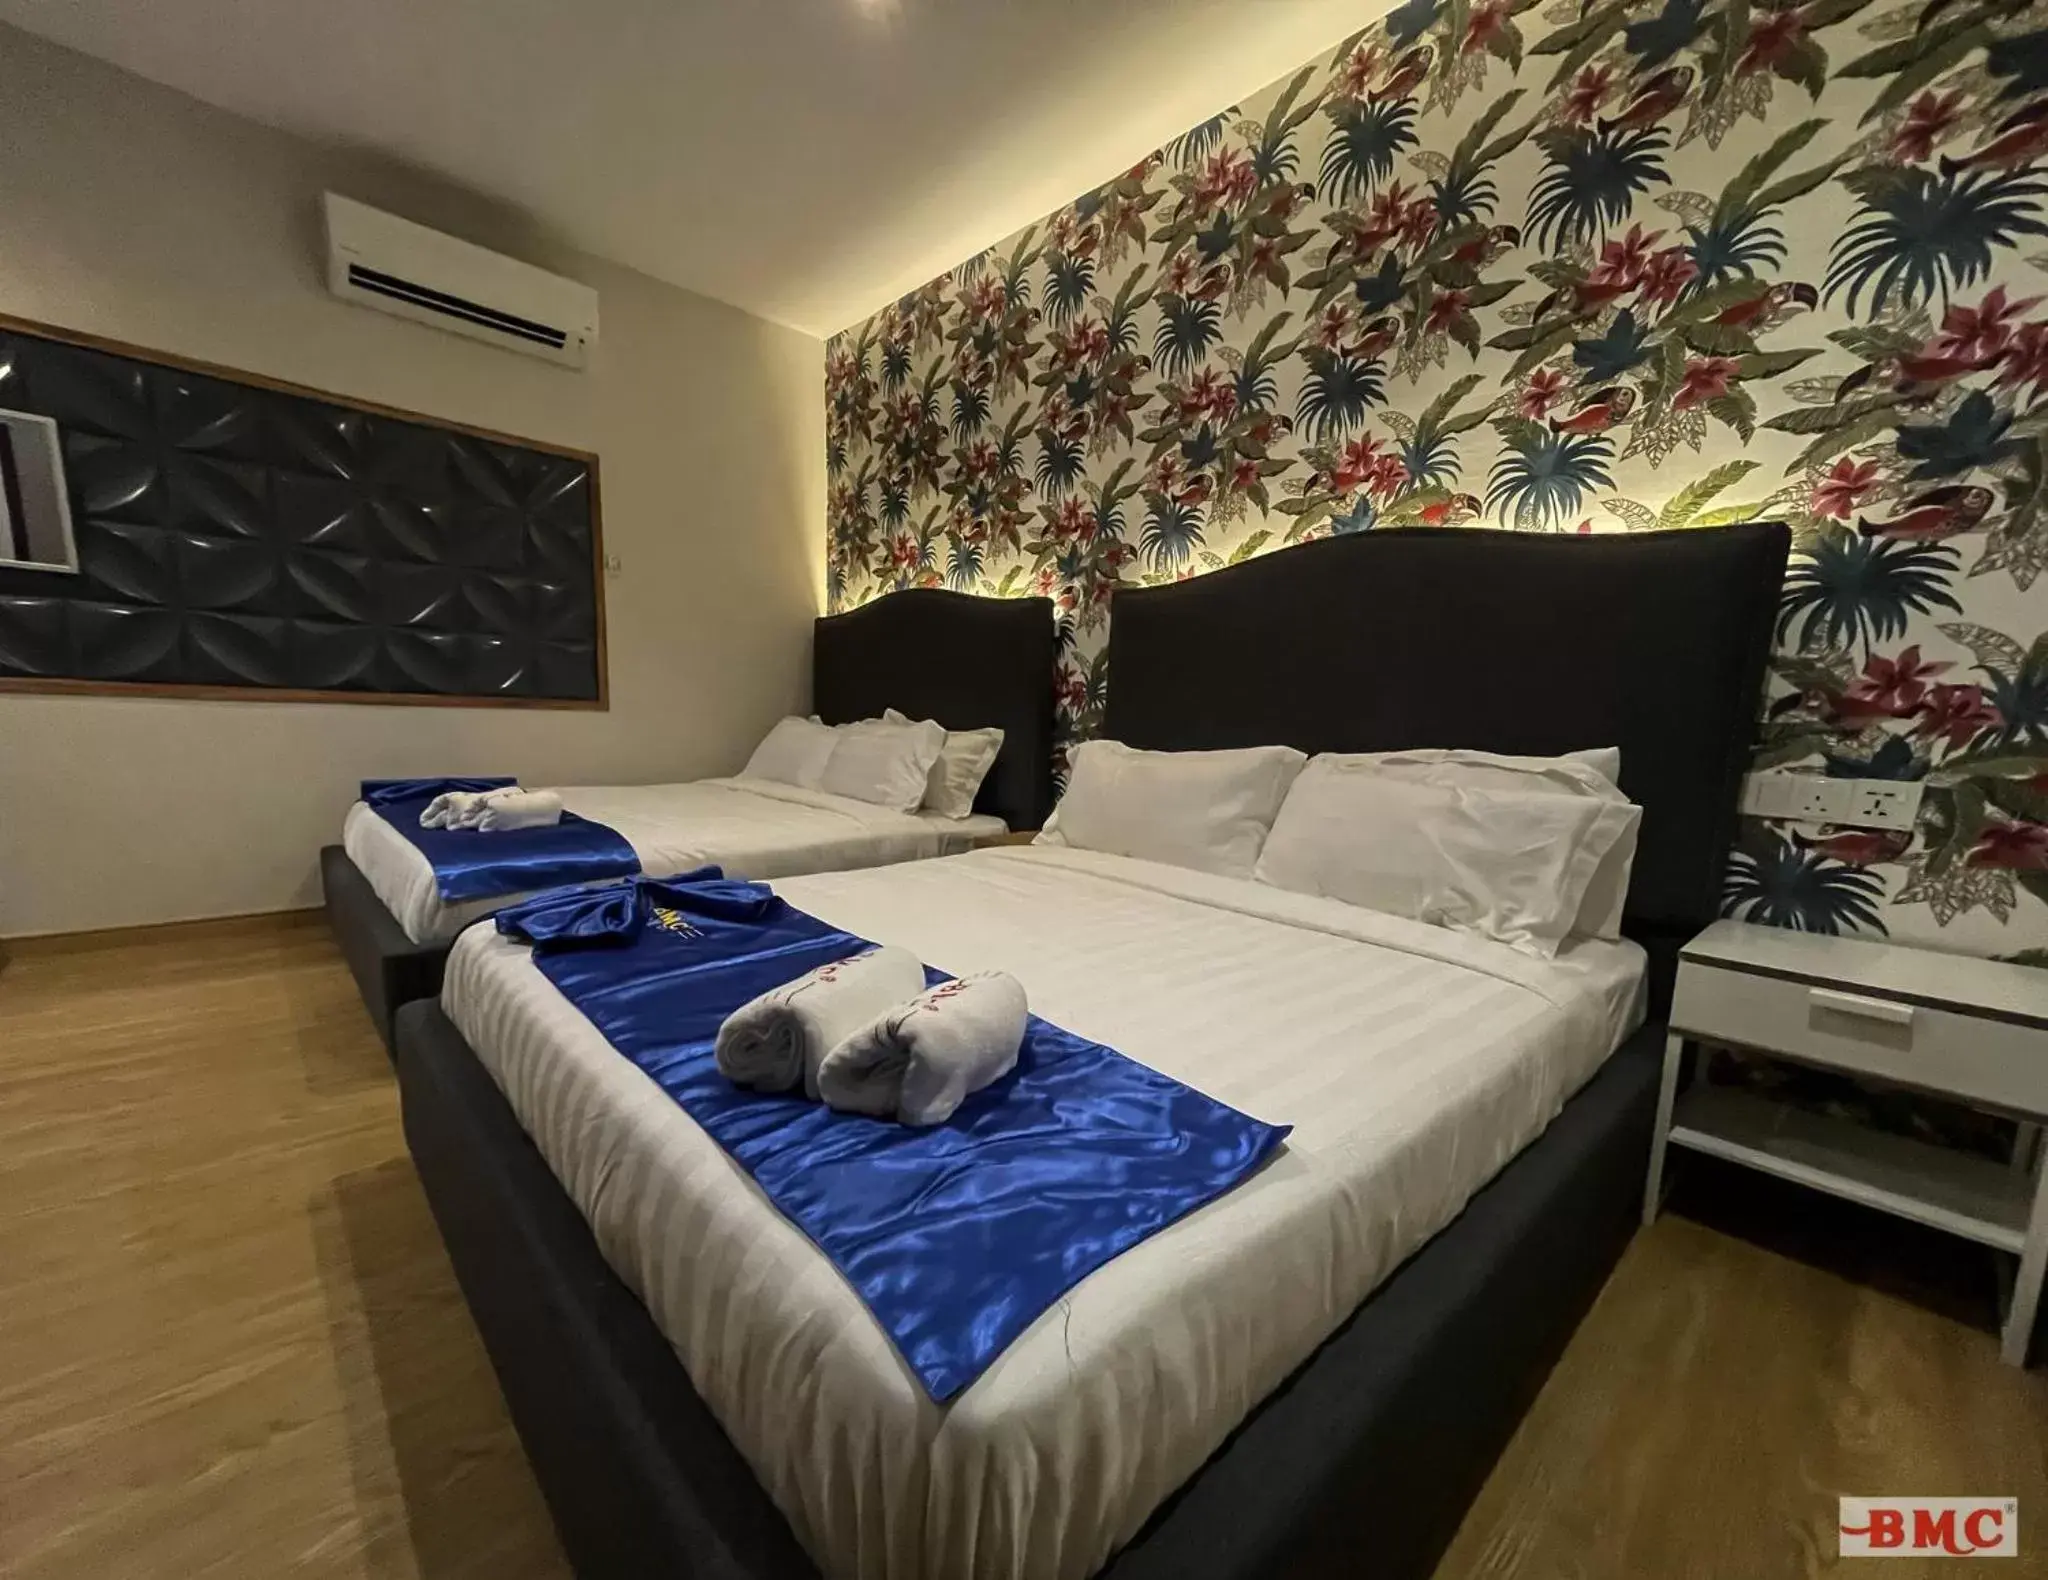 Bedroom, Bed in BMC Hotel